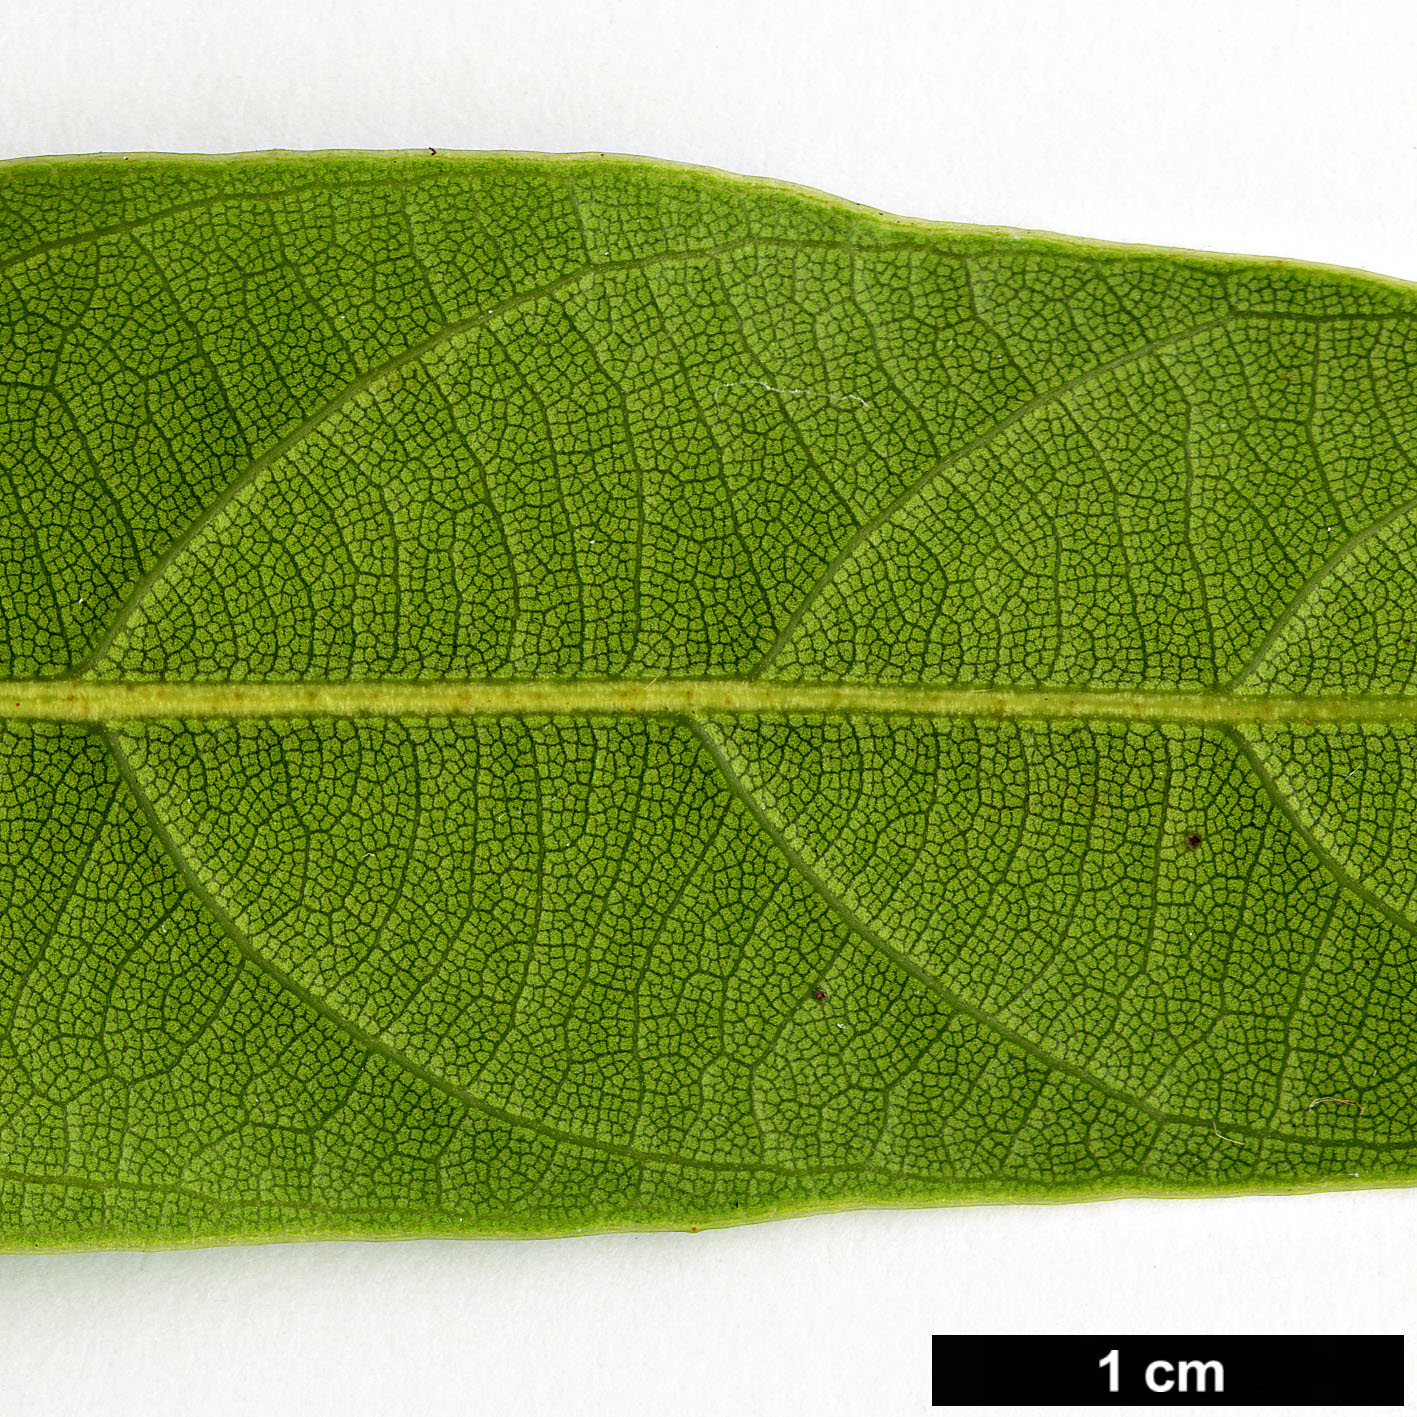 High resolution image: Family: Fagaceae - Genus: Lithocarpus - Taxon: brevicaudatus